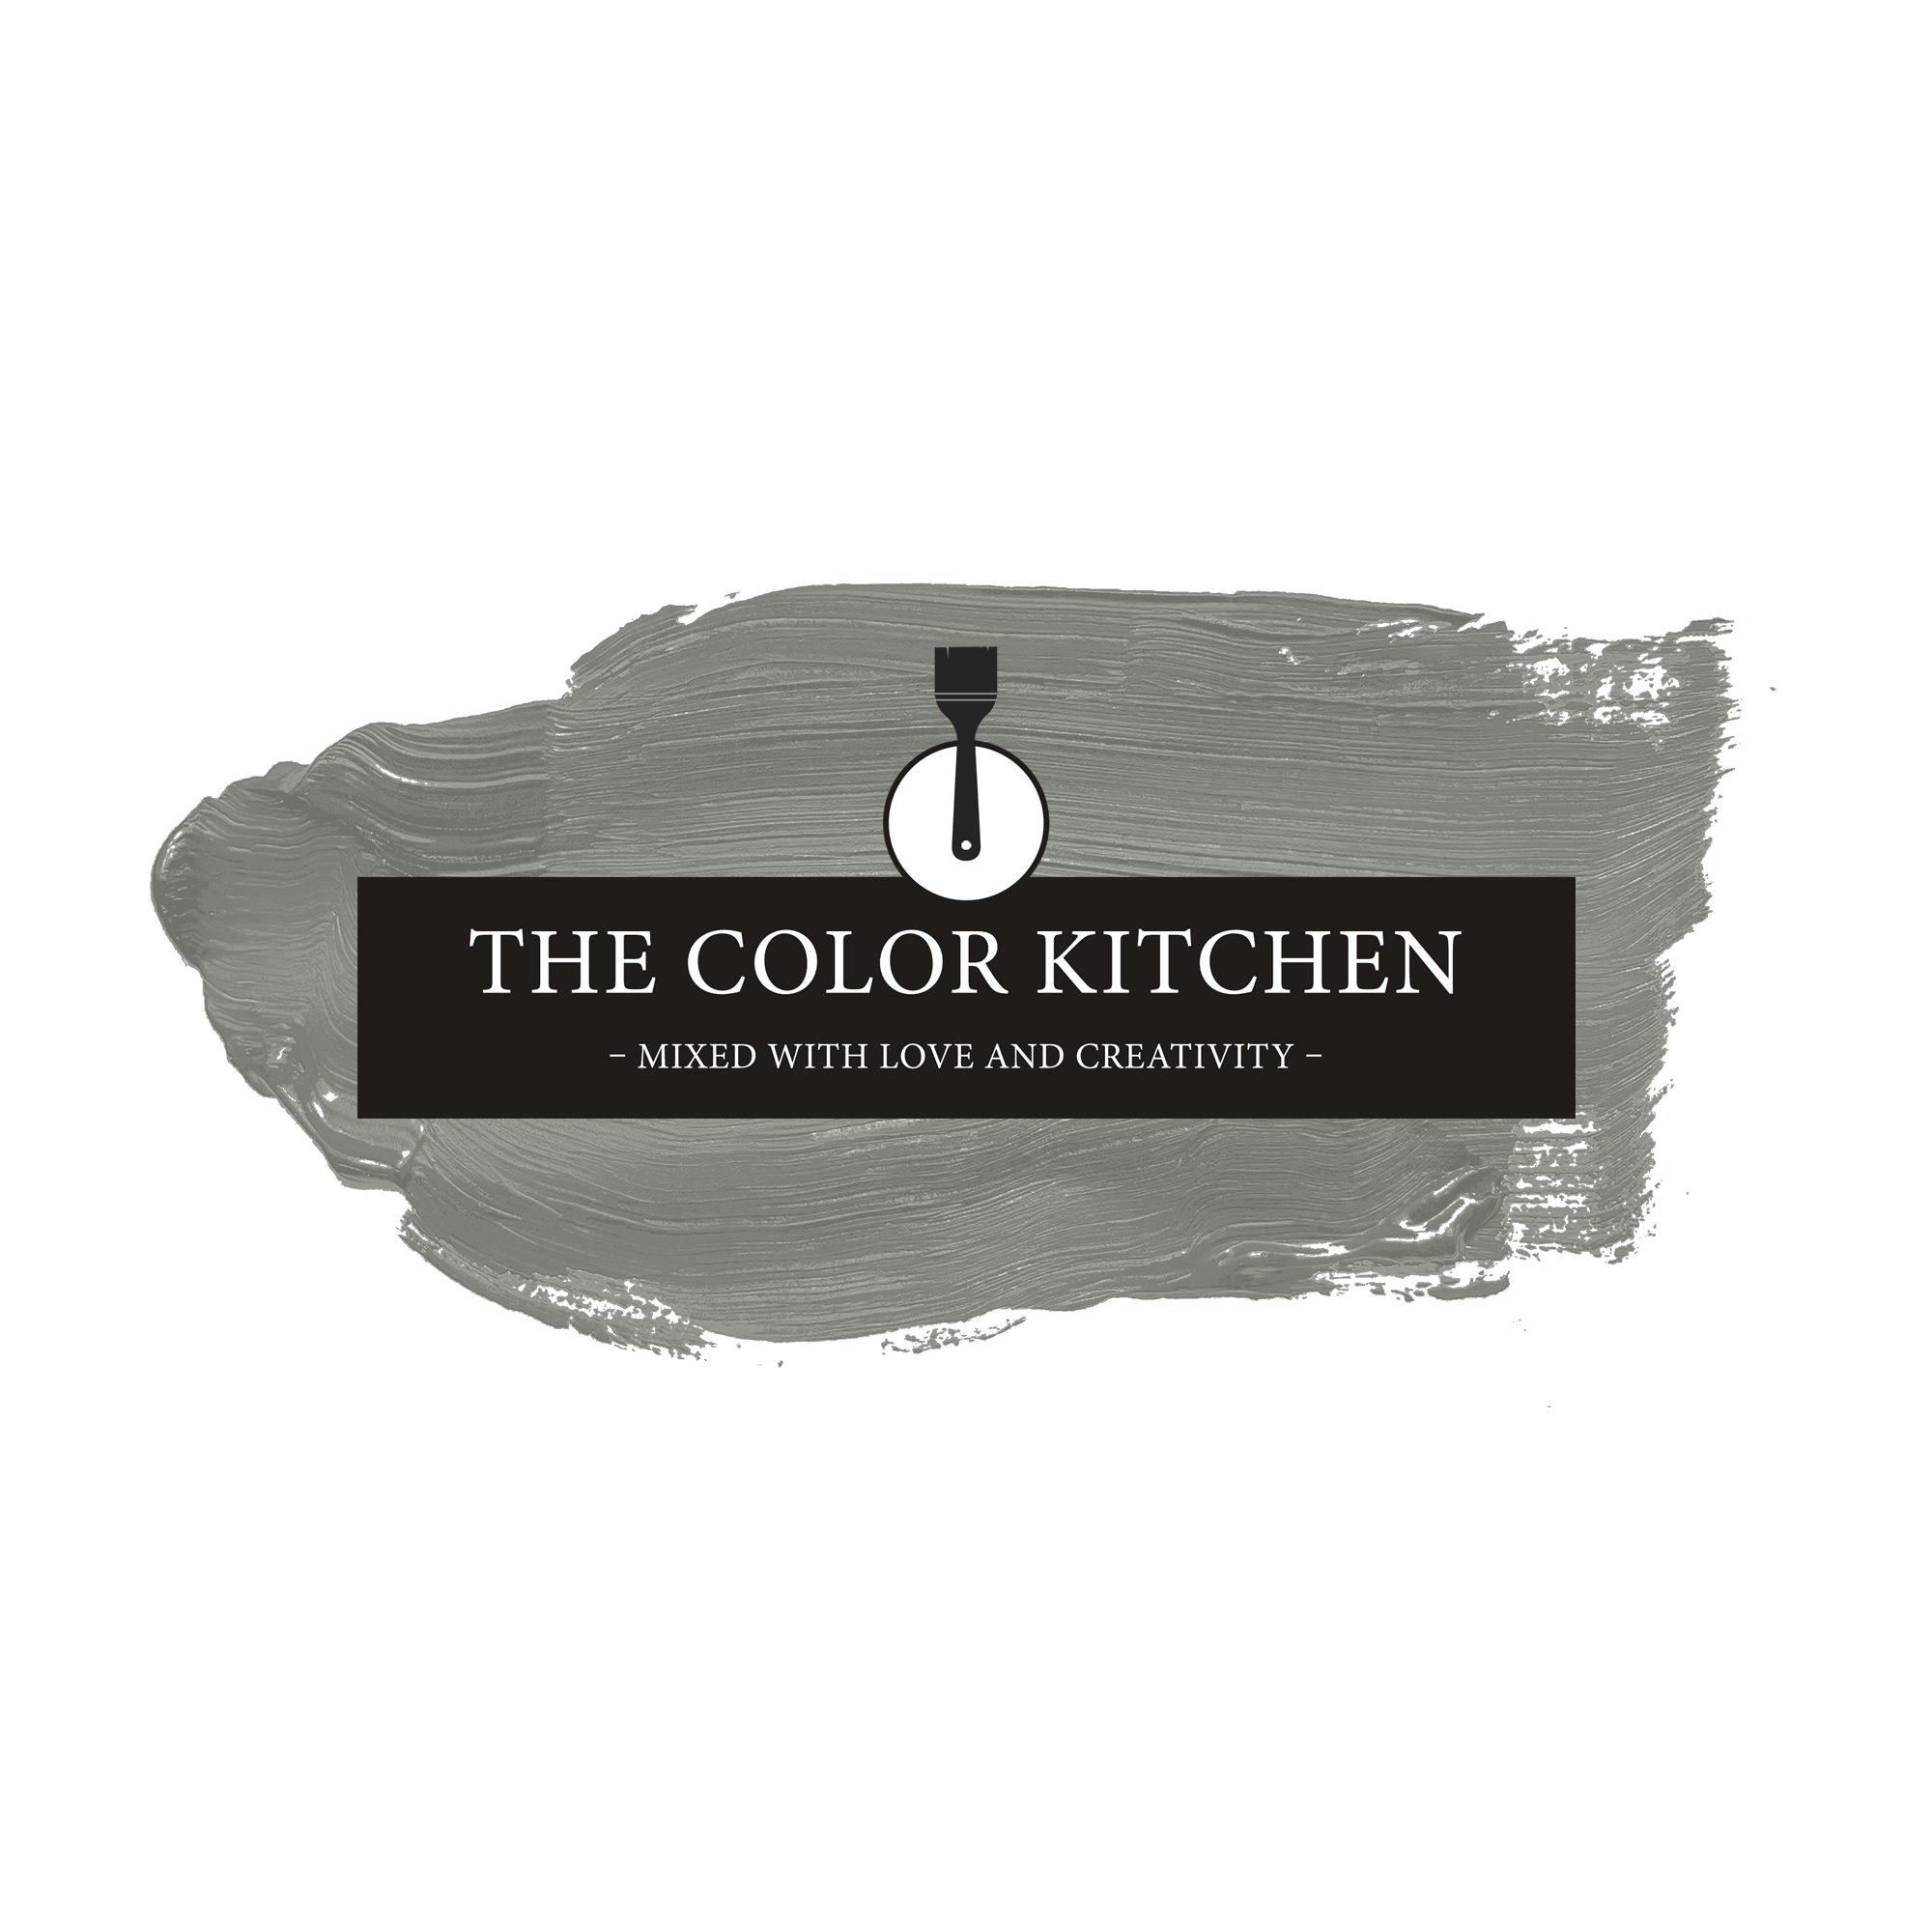 The Color Kitchen Original Oregano 5 l